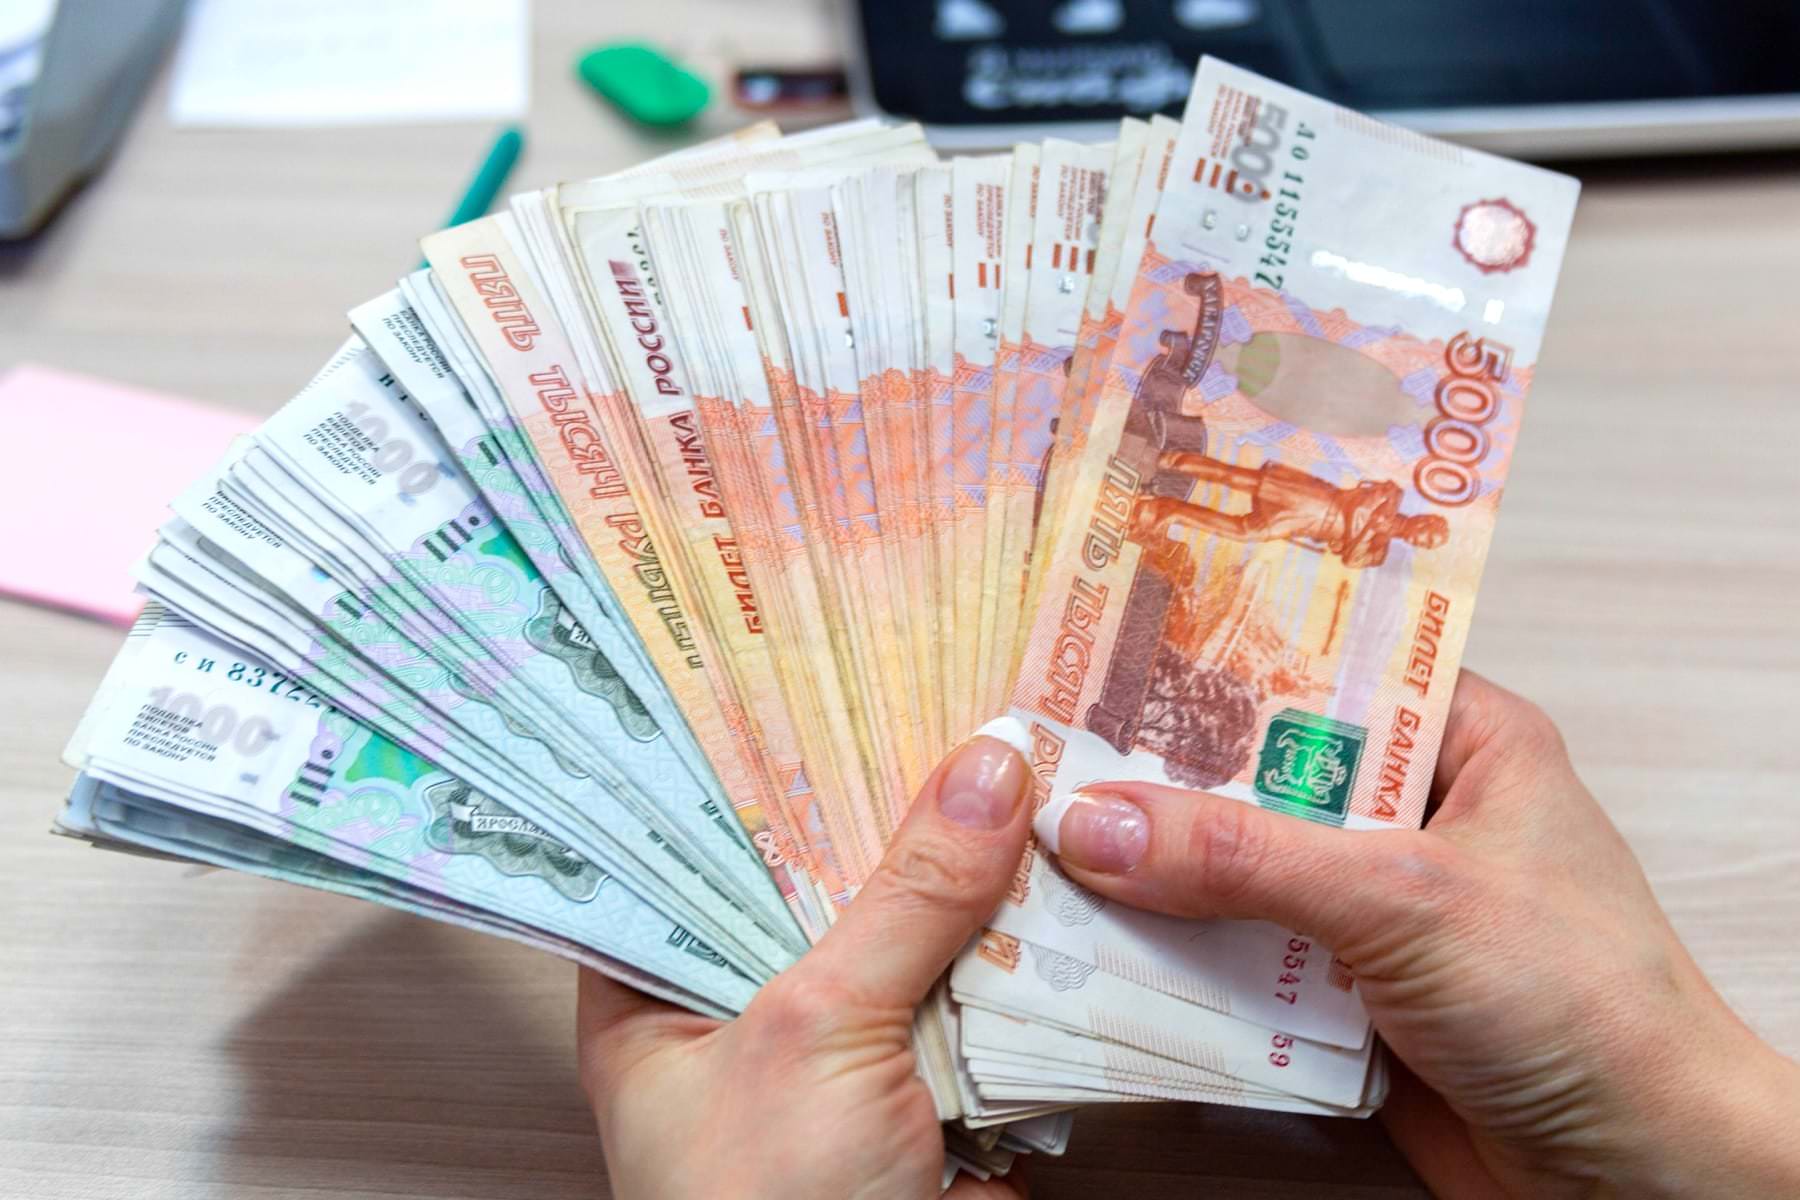 Рубль исчезнет. С 1 января начинается масштабная денежная реформа